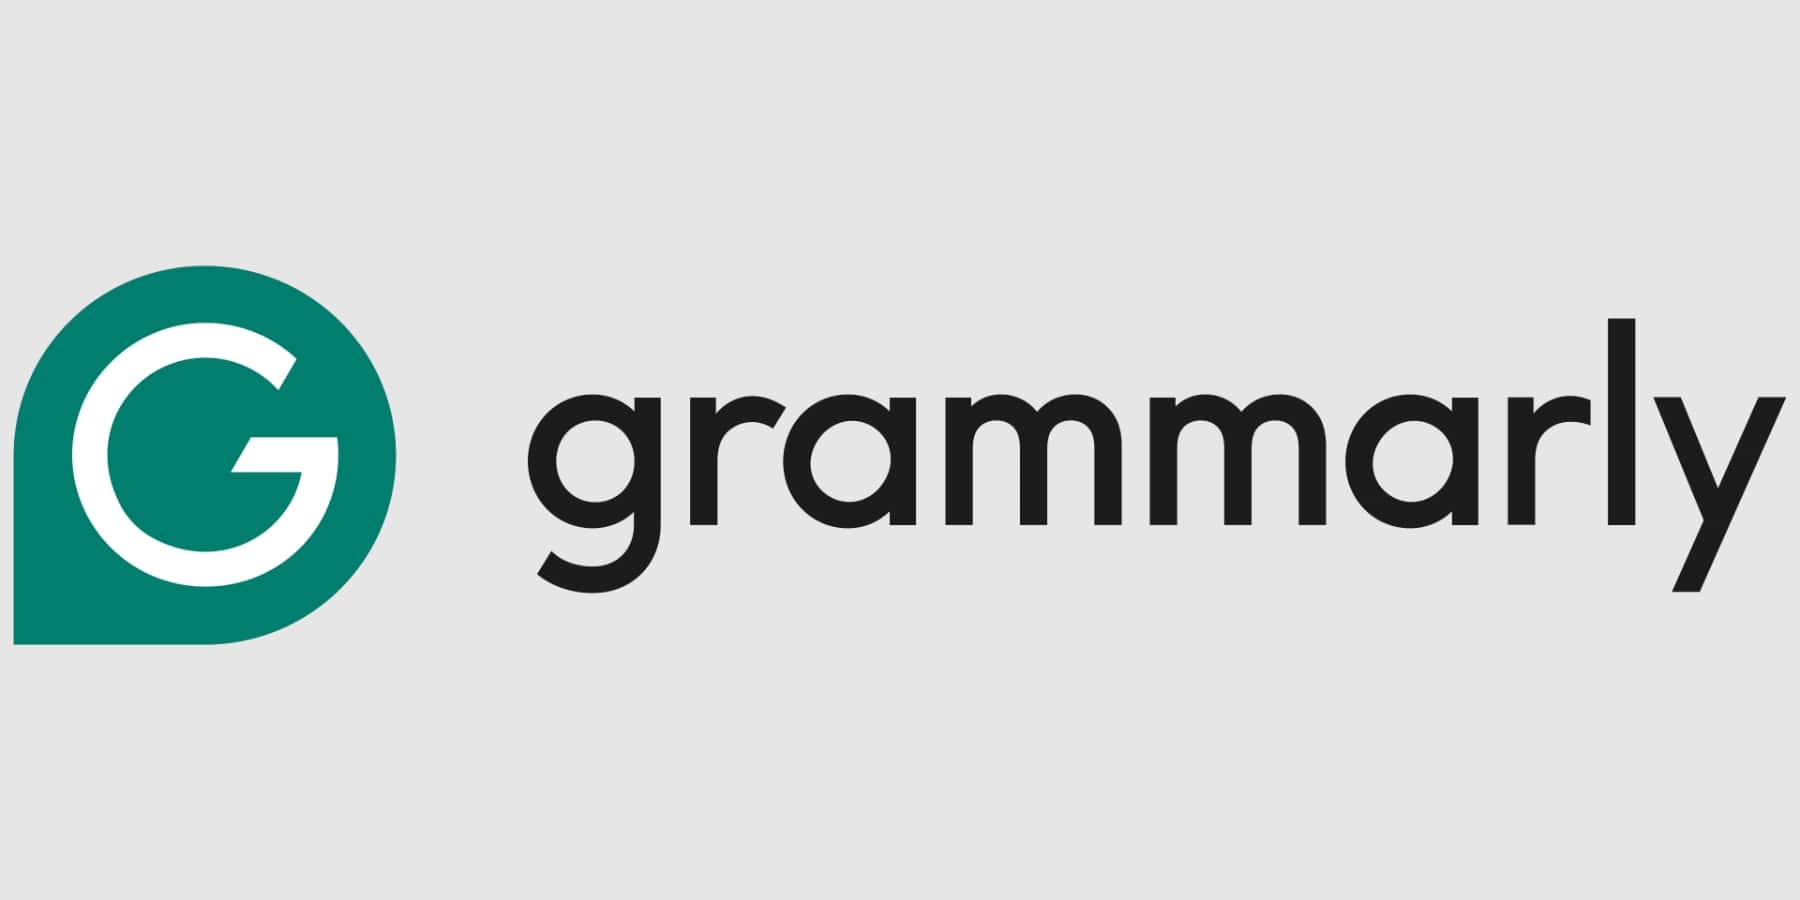 ferramentas gramaticais de IA para a educação.